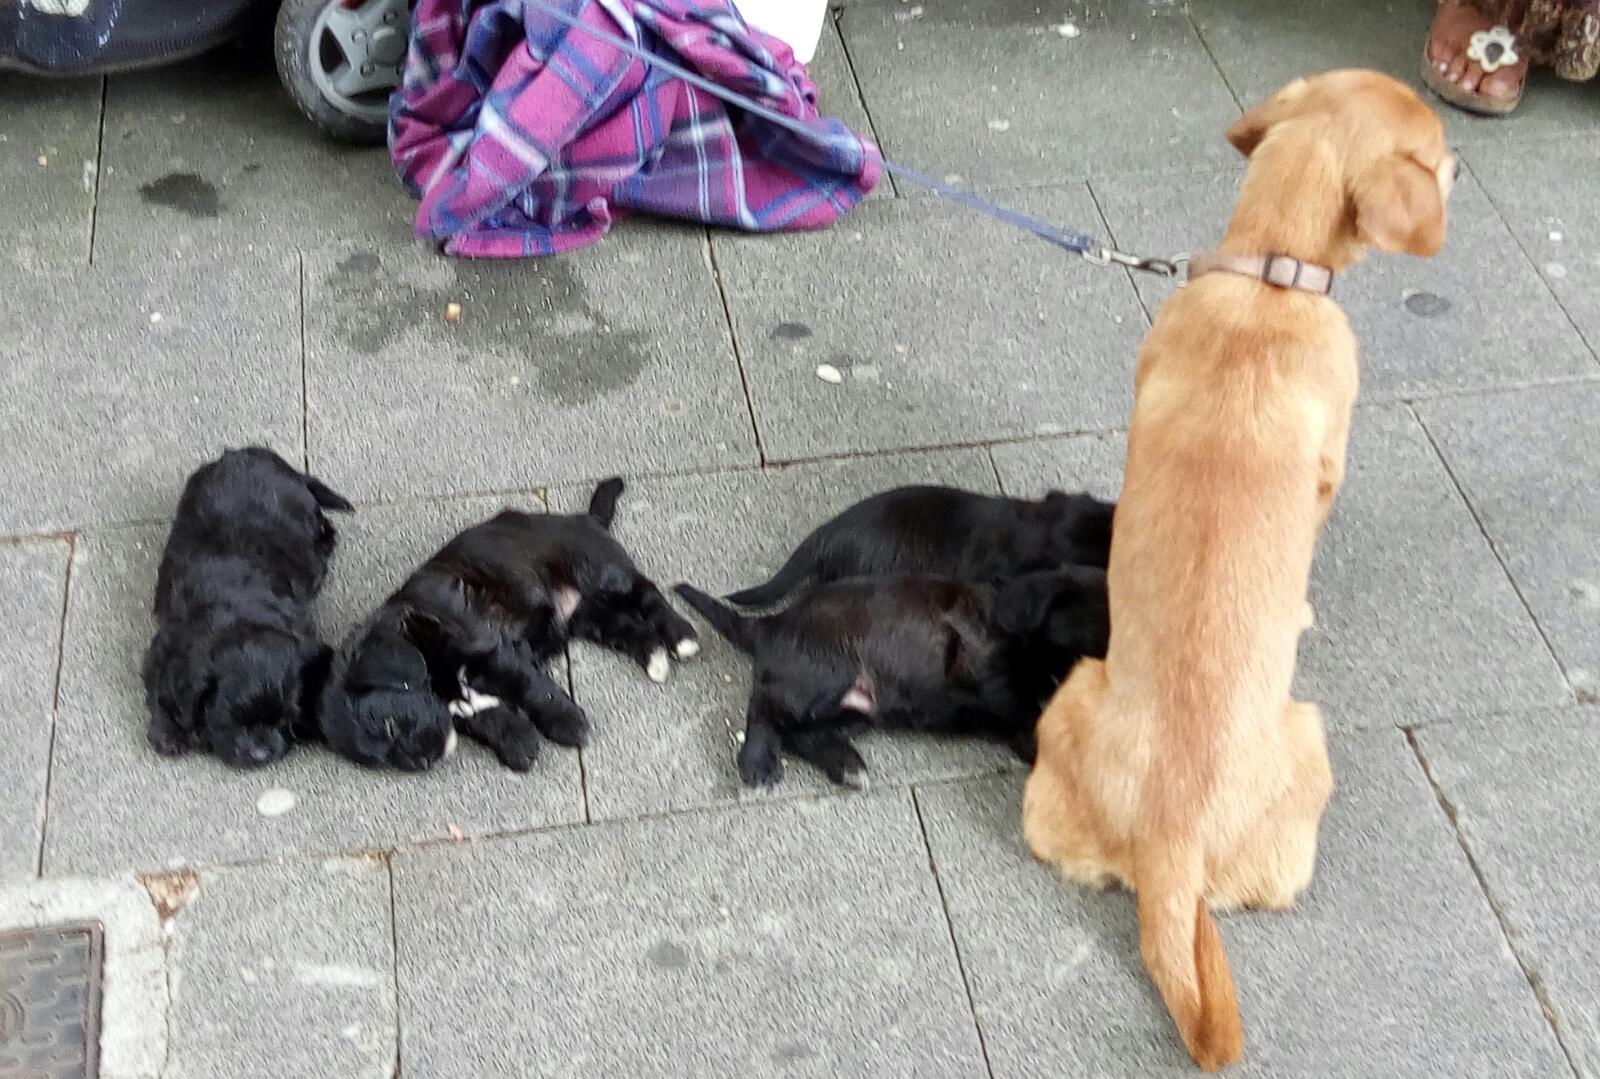 Famiglia vive con 13 cani, di cui uno morto. I carabinieri sequestrano gli animali a Cologno